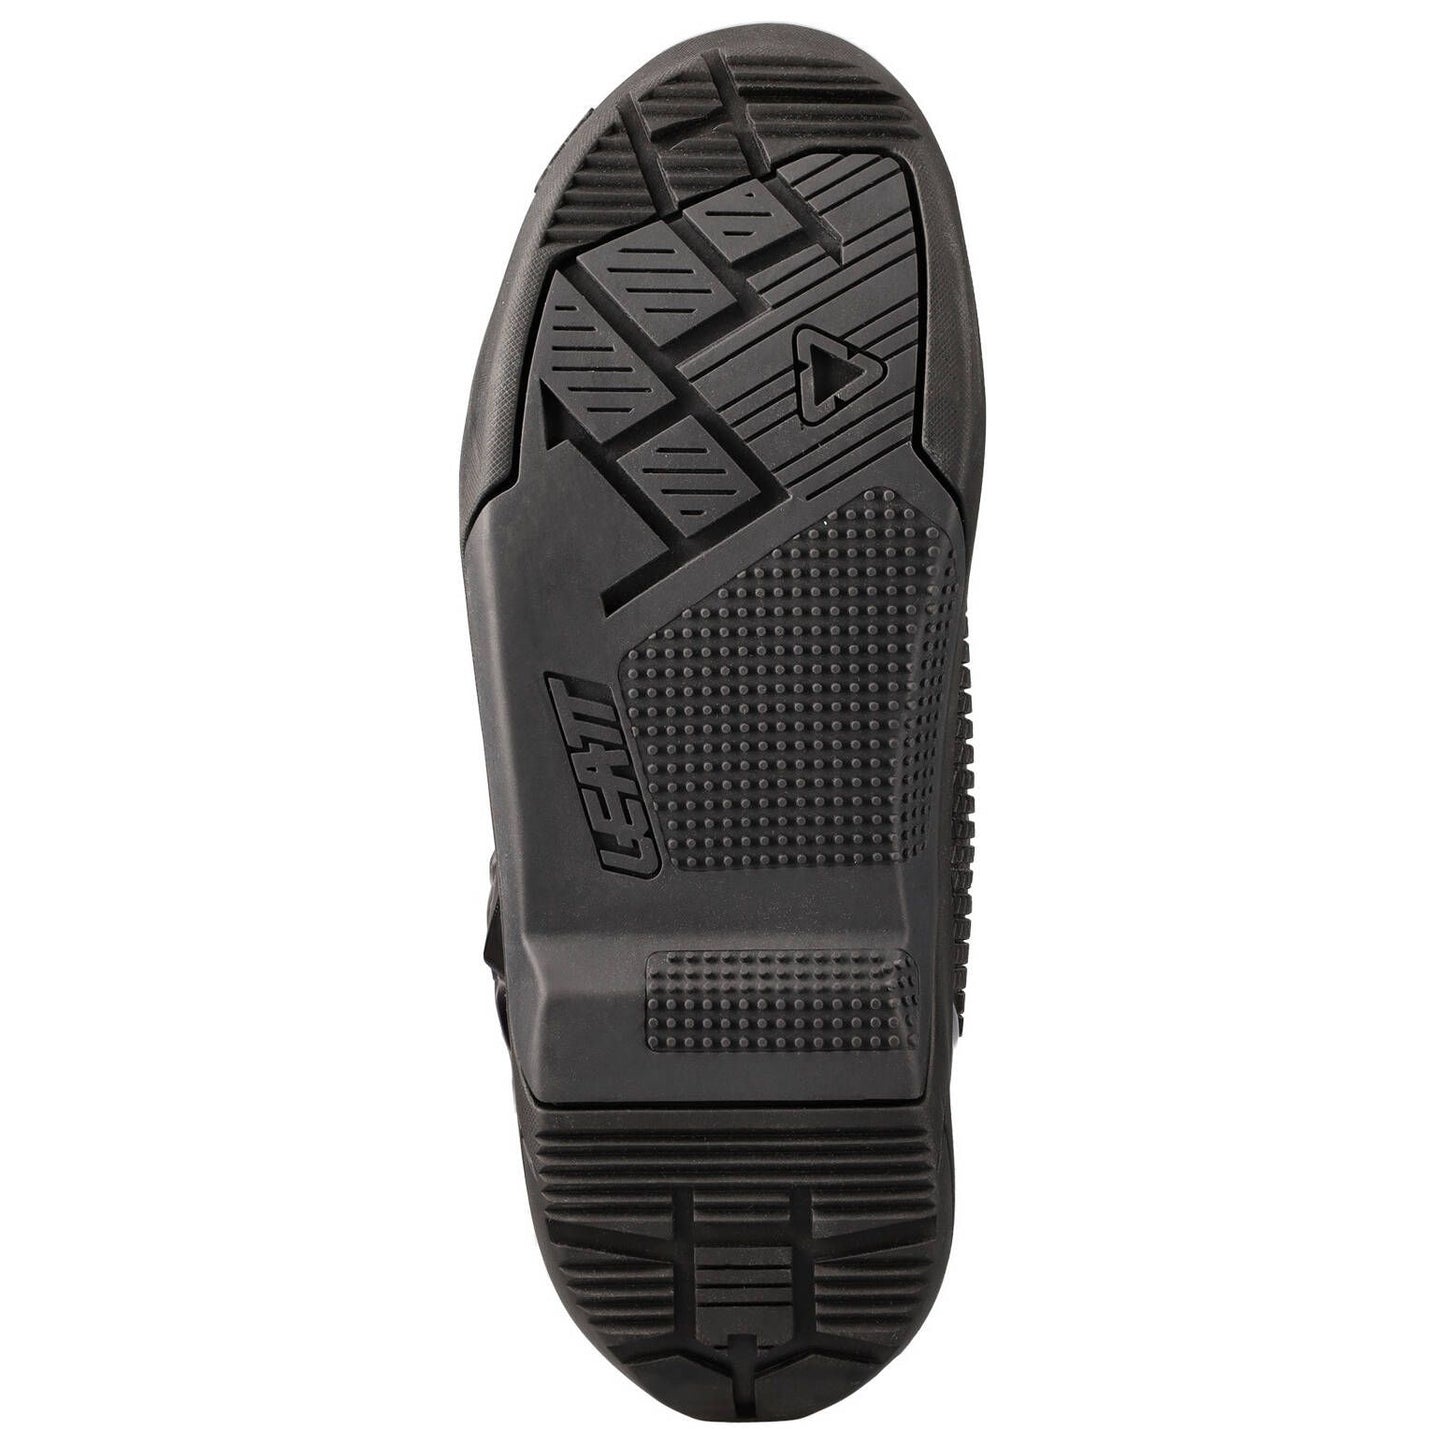 Leatt 3.5 MX Boots - Black